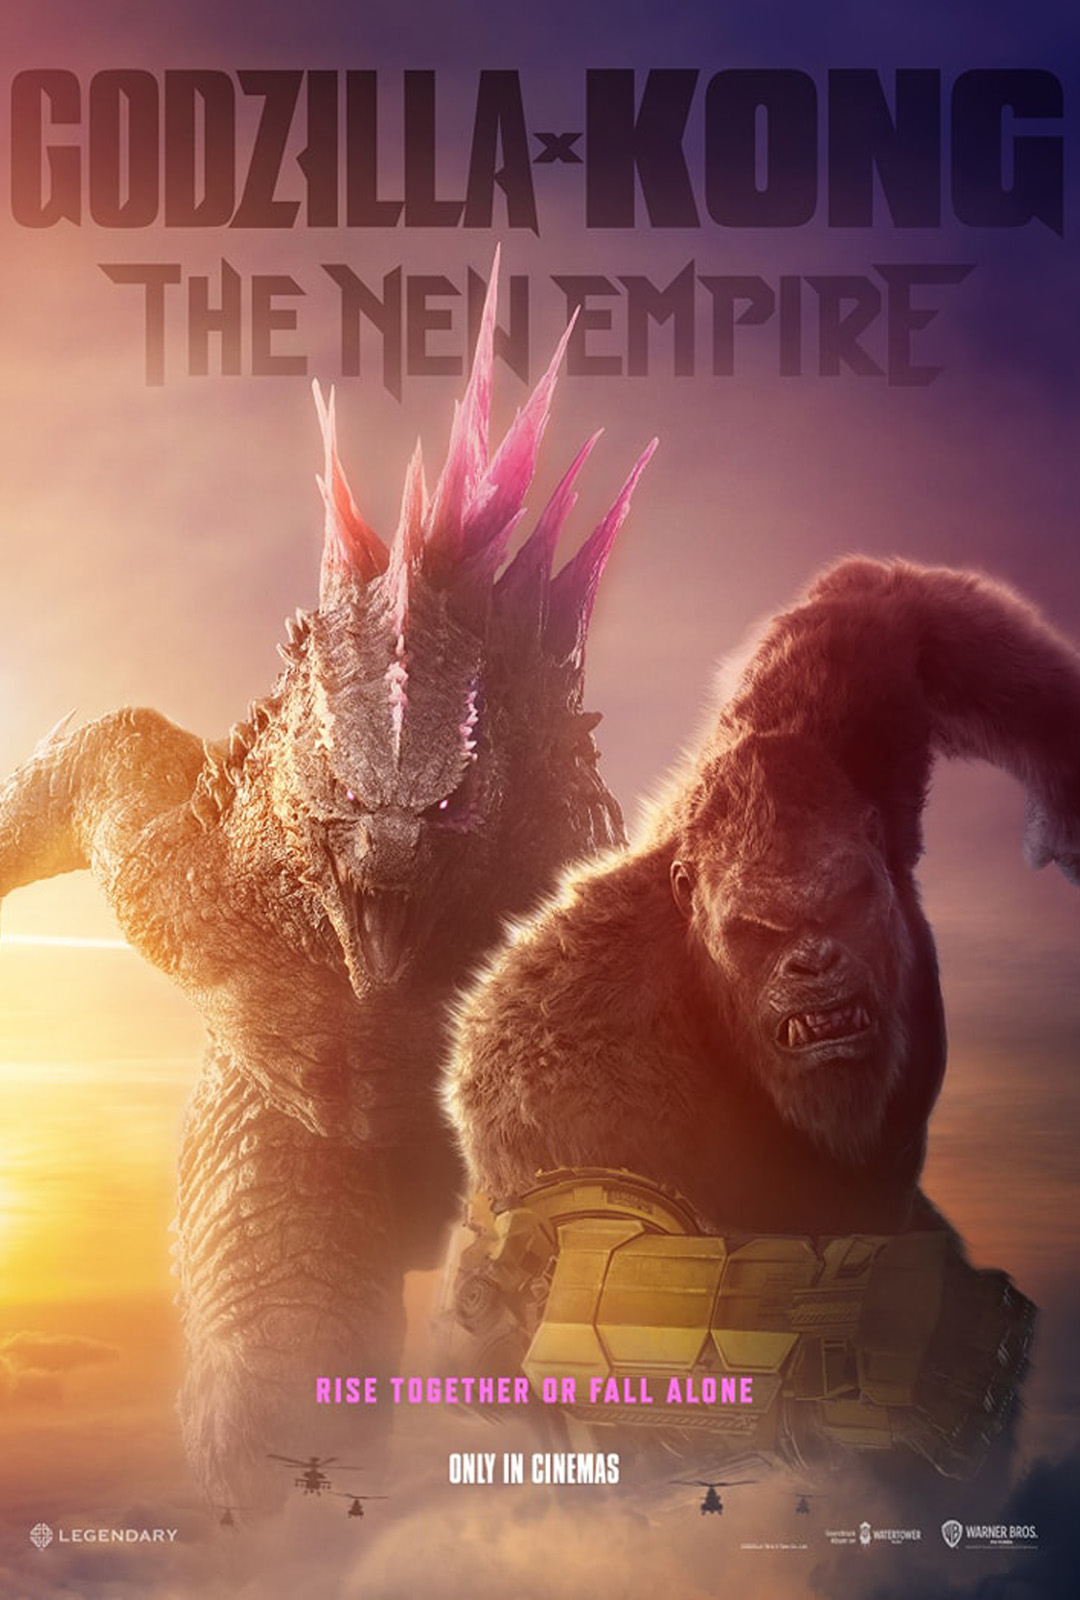 Movie Poster: Godzilla y Kong: El nuevo imperio